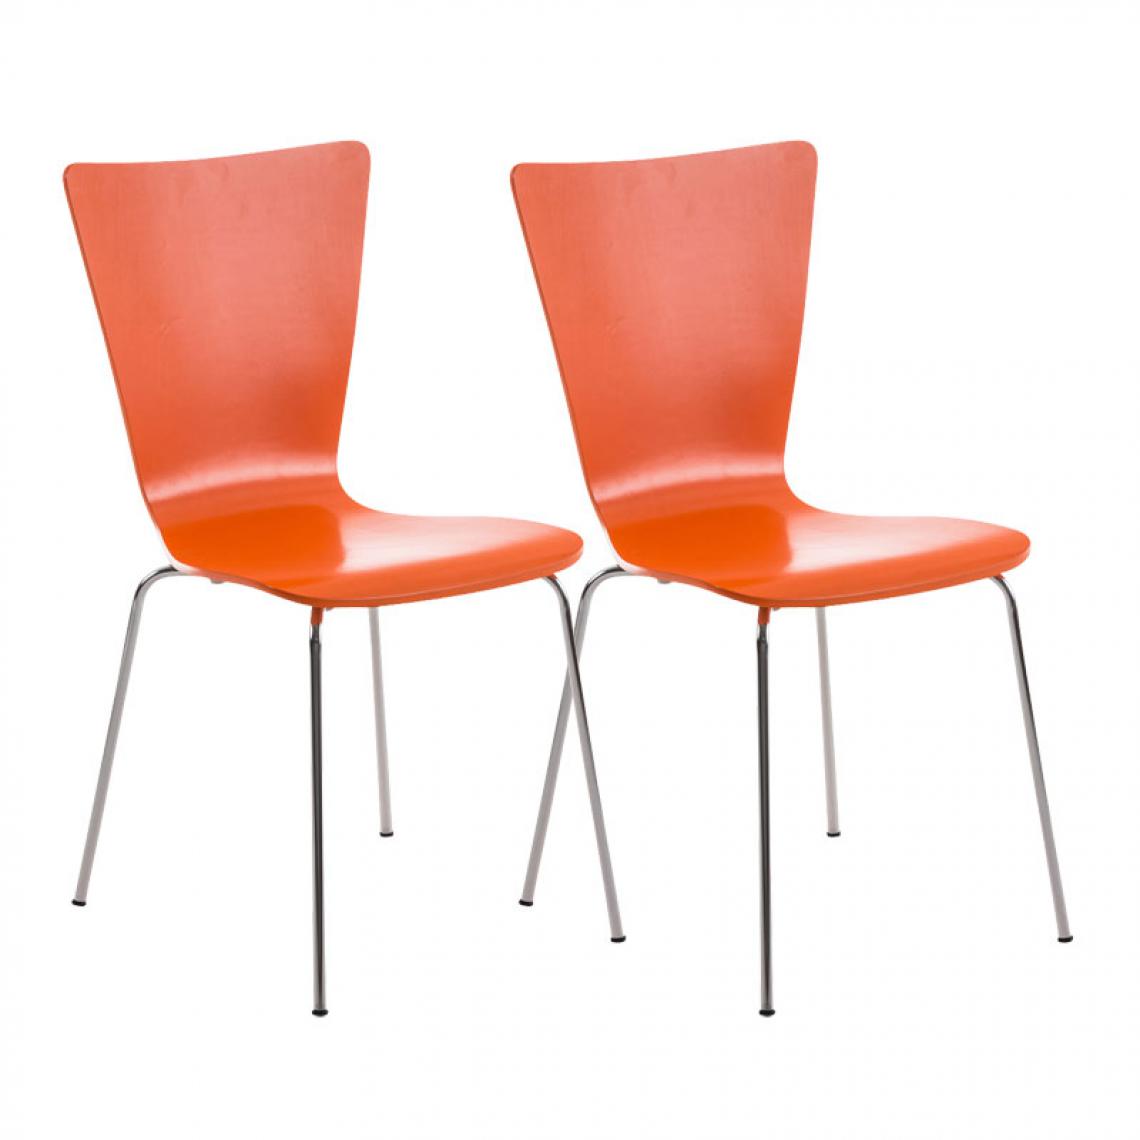 Icaverne - Chic Lot de 2 chaises visiteurs serie Jakarta couleur Orange - Chaises